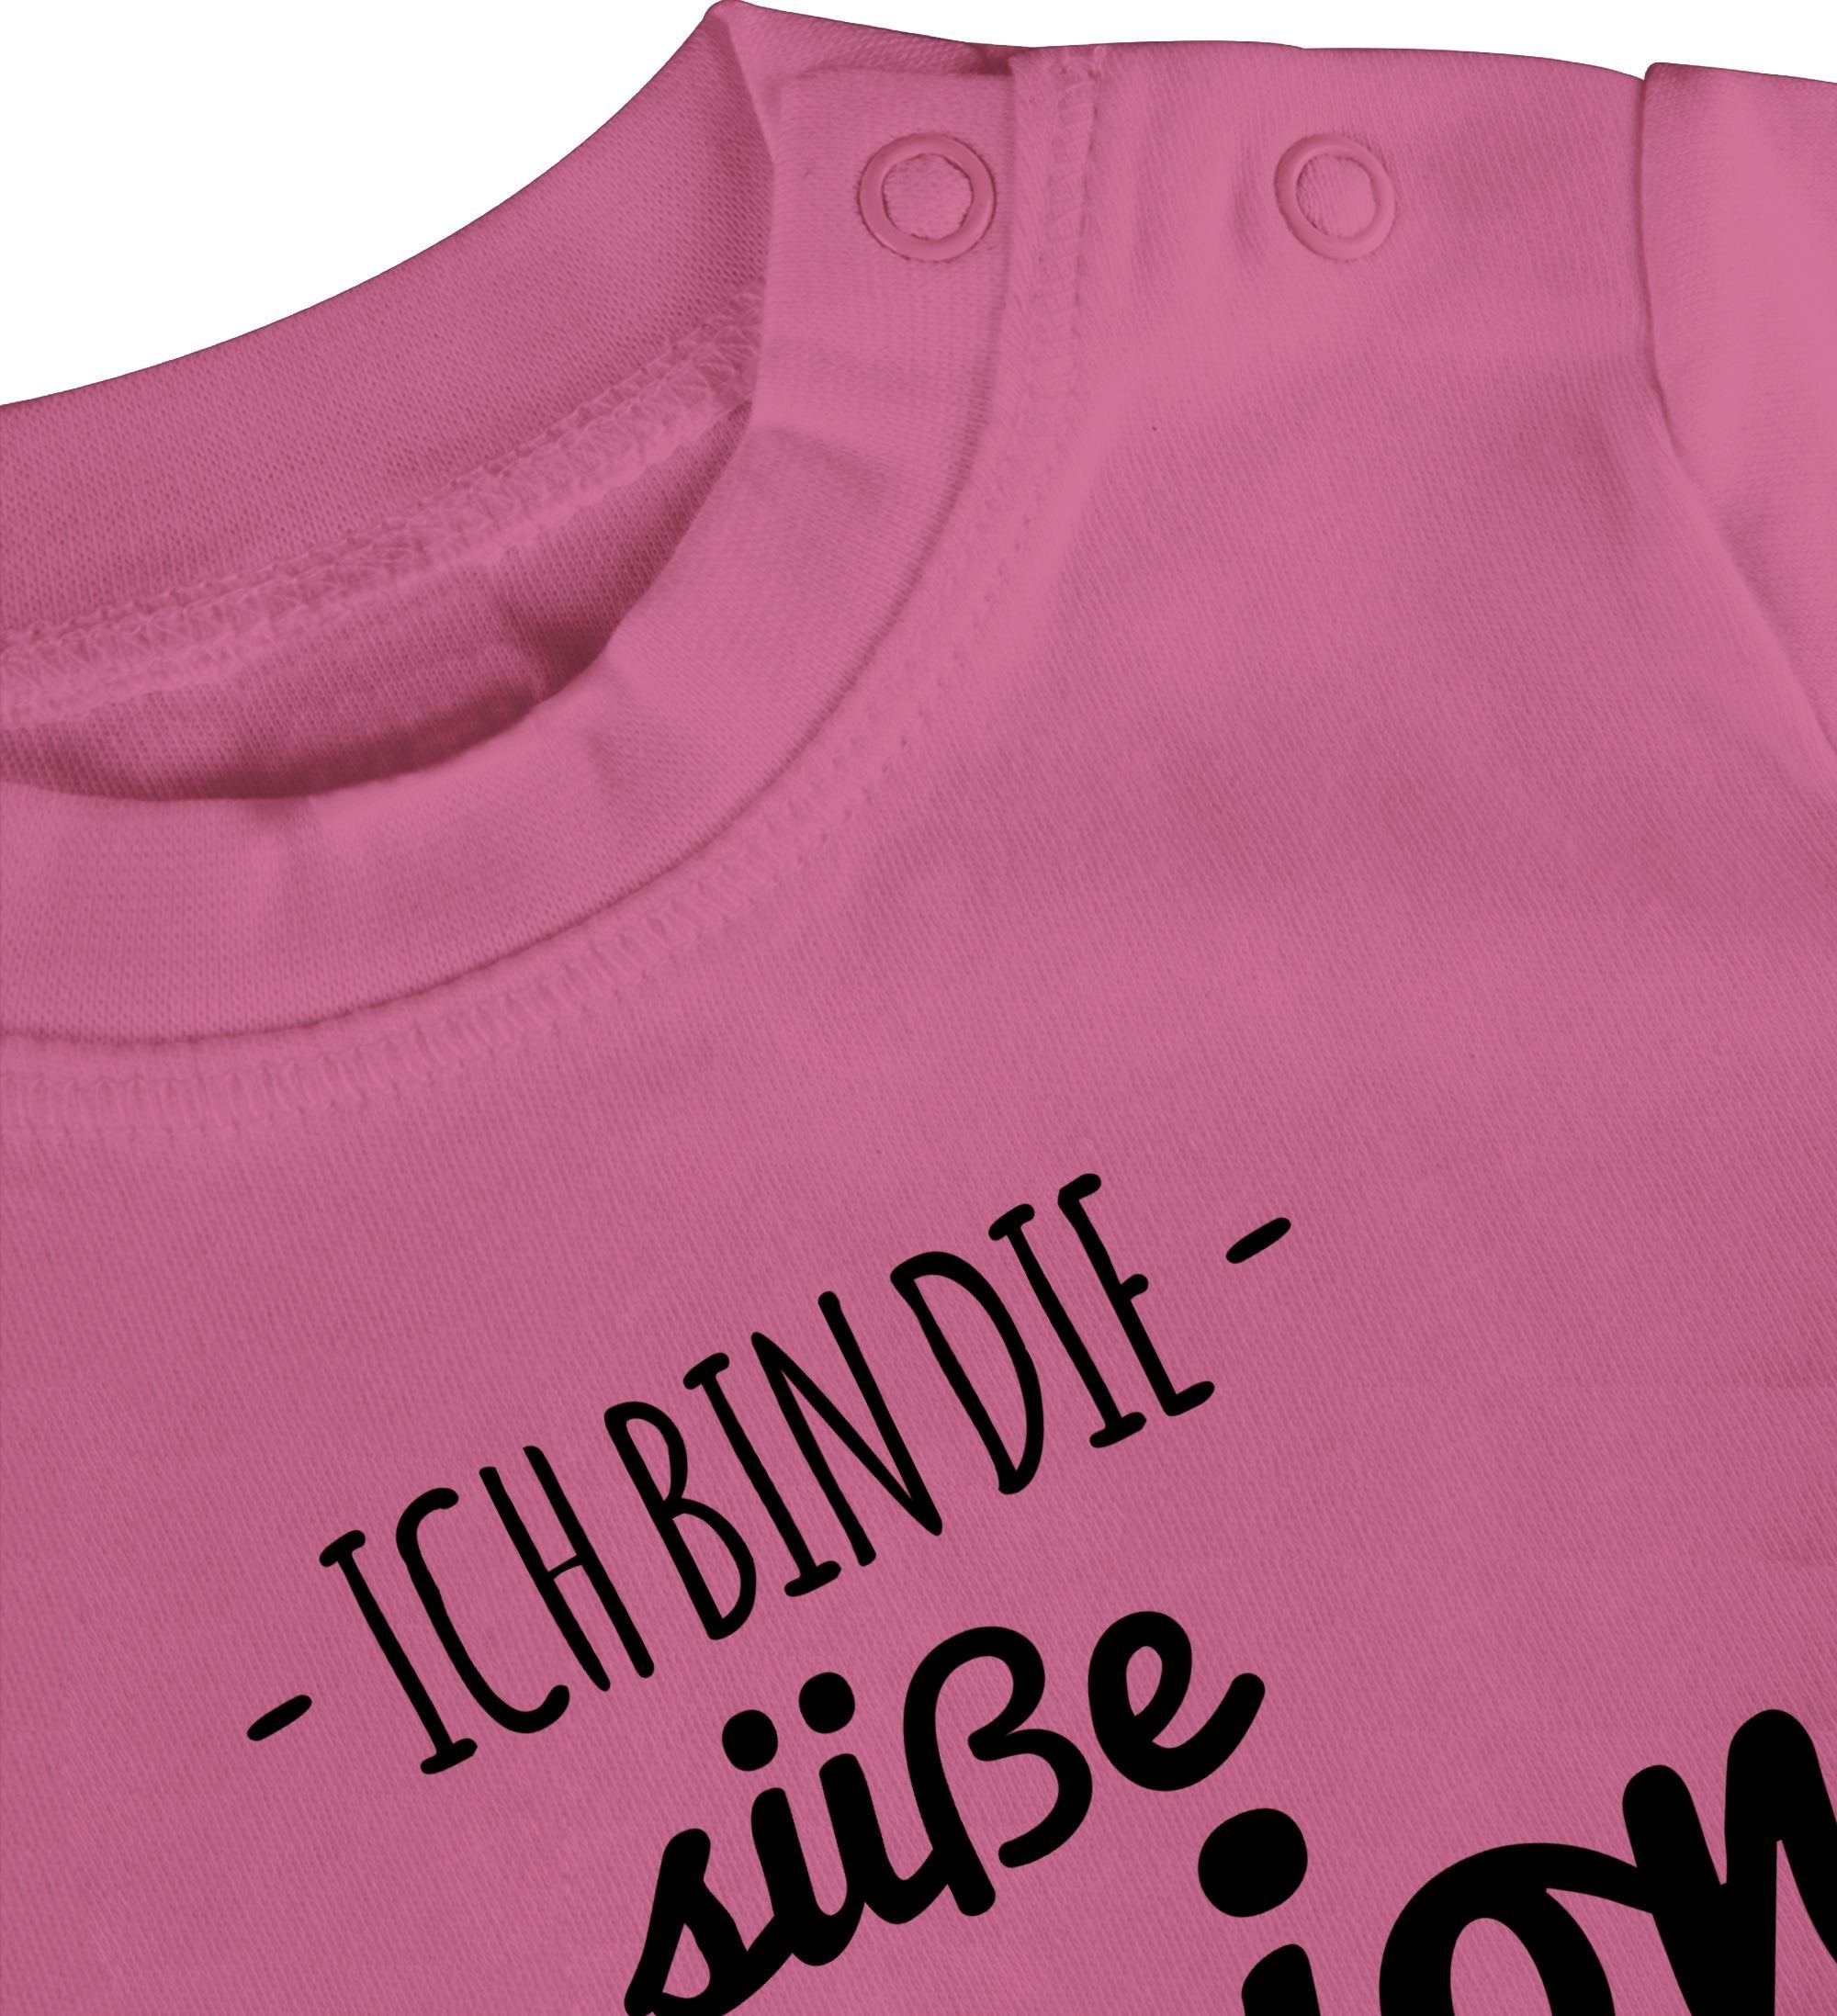 Shirtracer T-Shirt Süße 2 Geschenk Papa von Version Vatertag Baby Pink